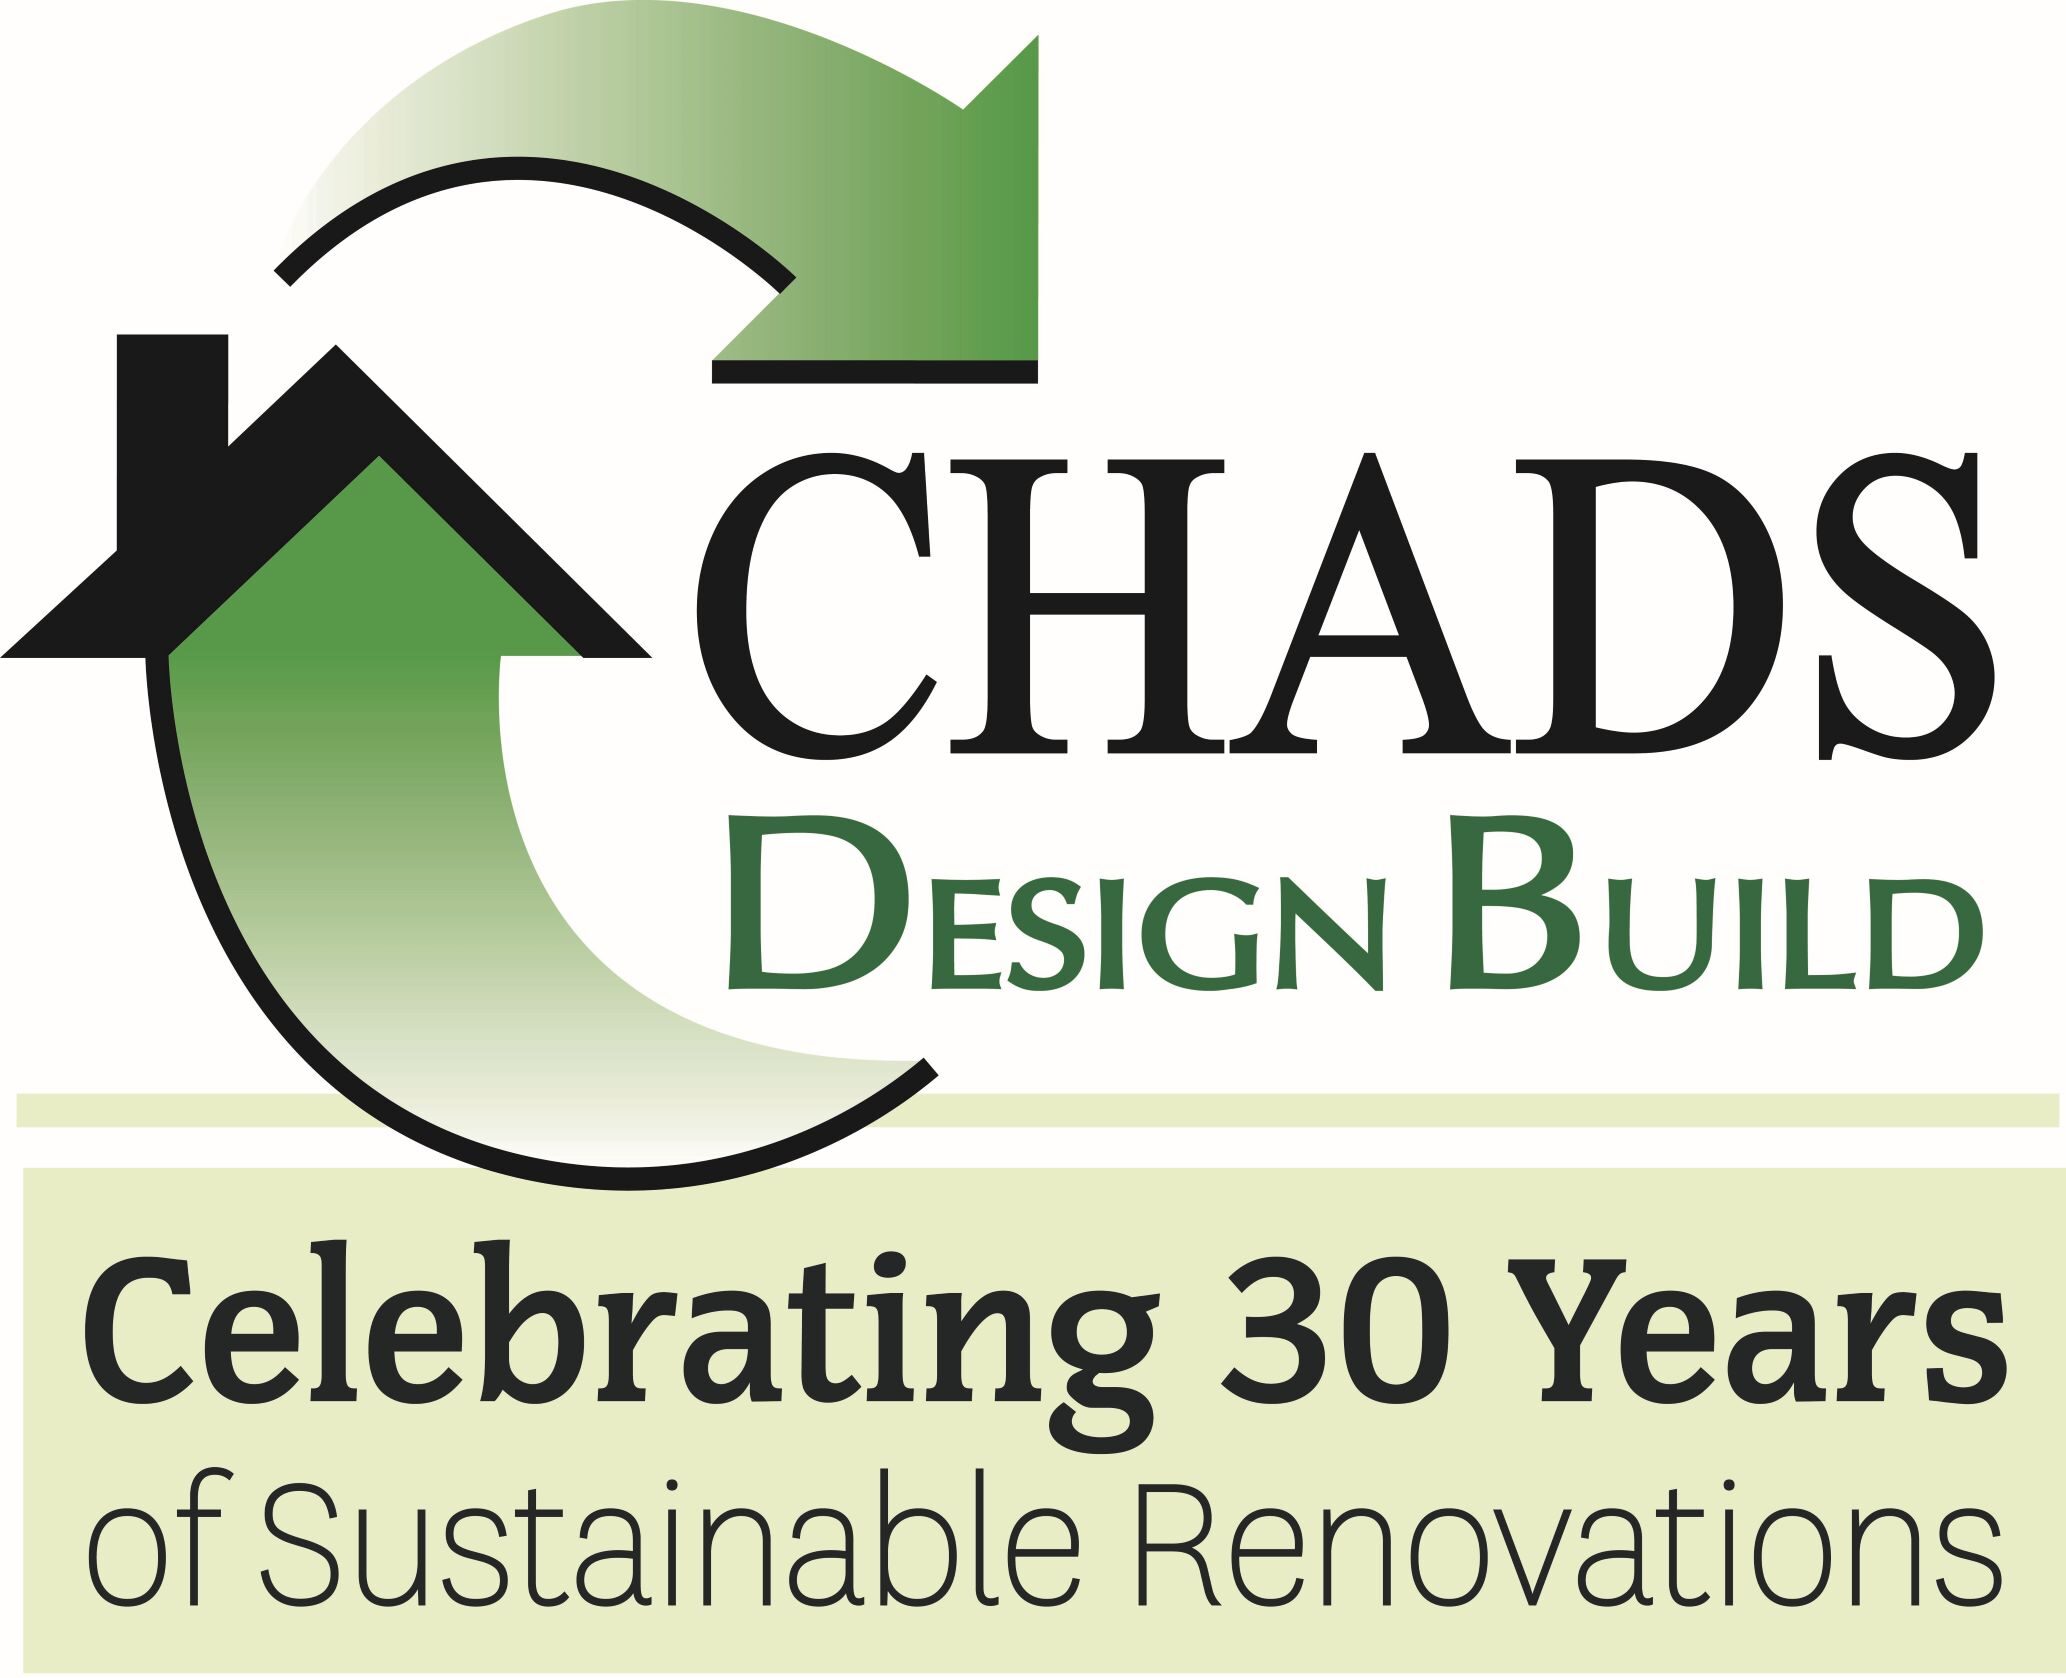 Chads Design Build